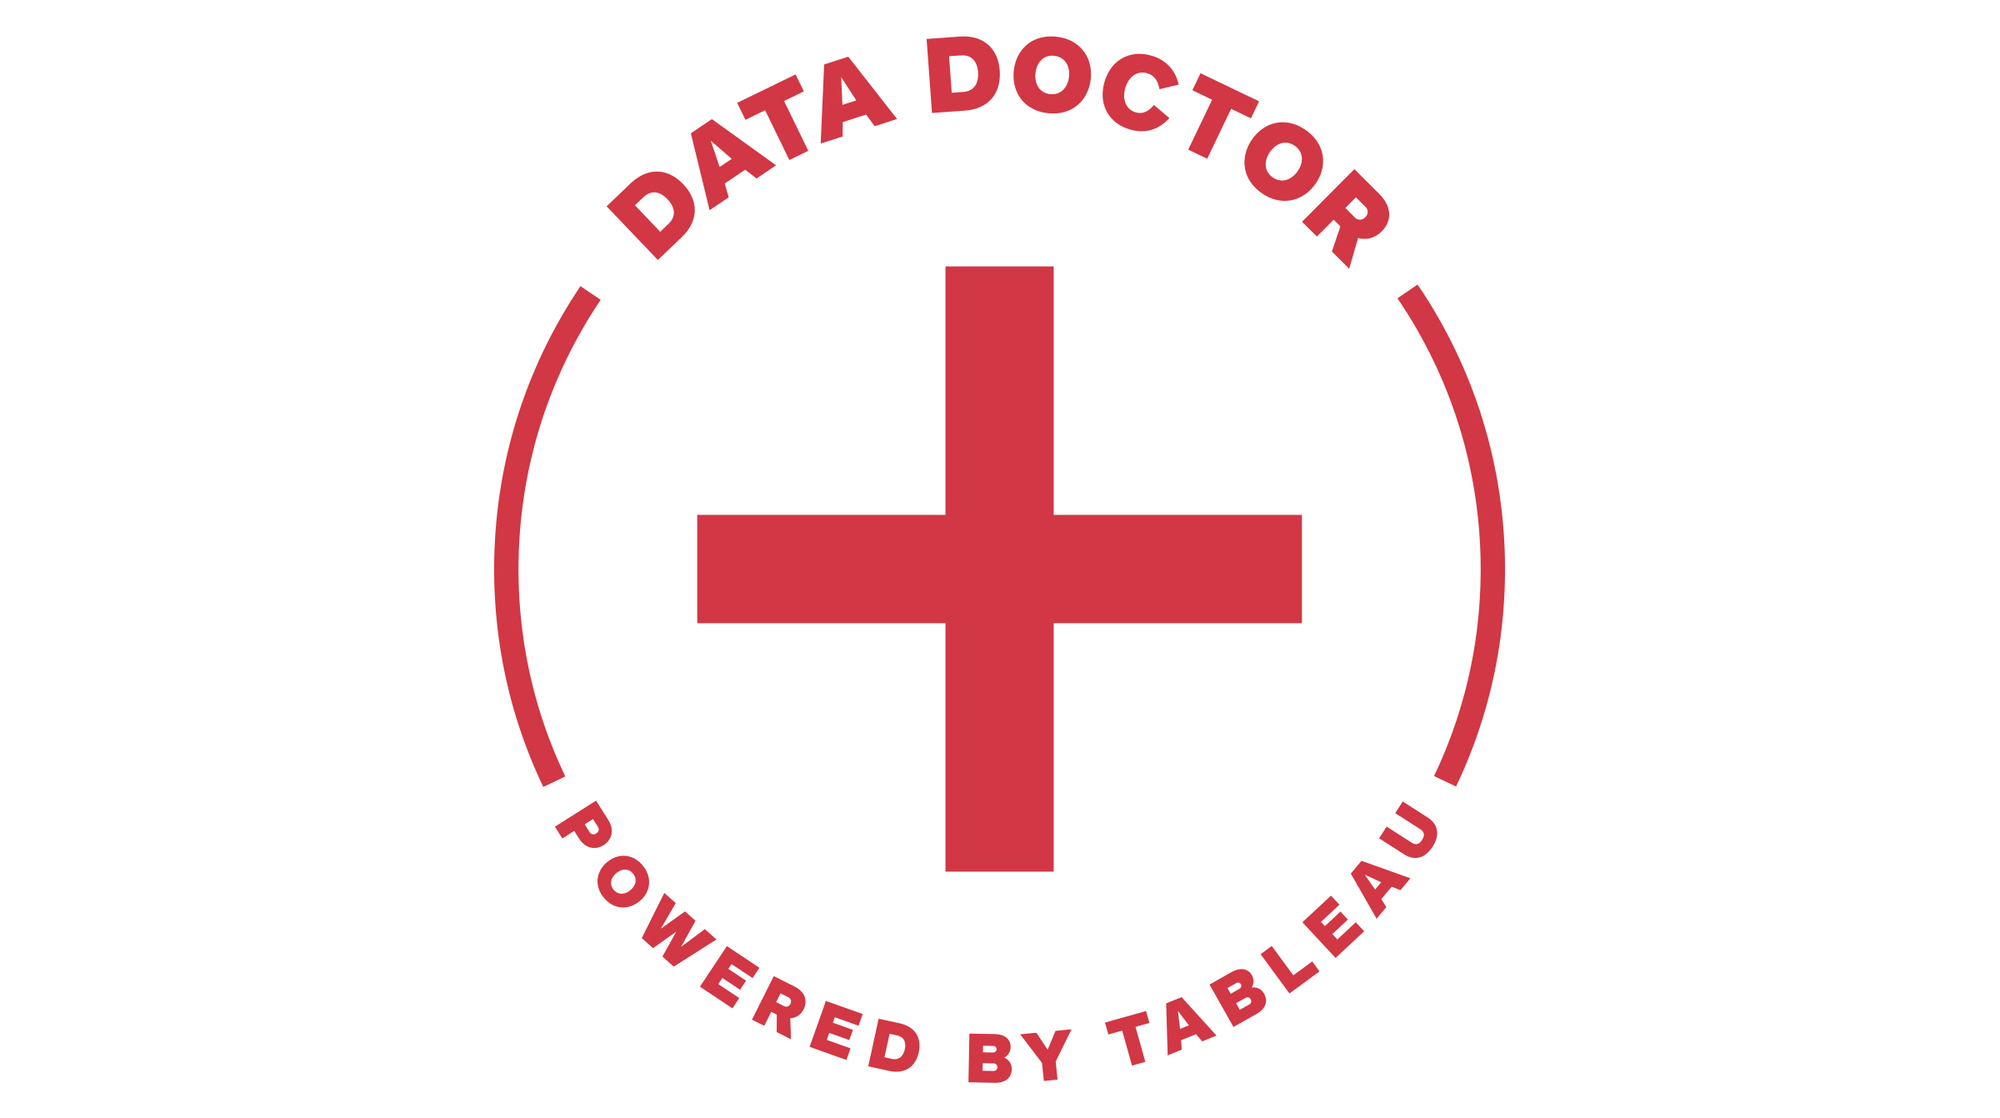 ツールキット: Data Doctor に移動